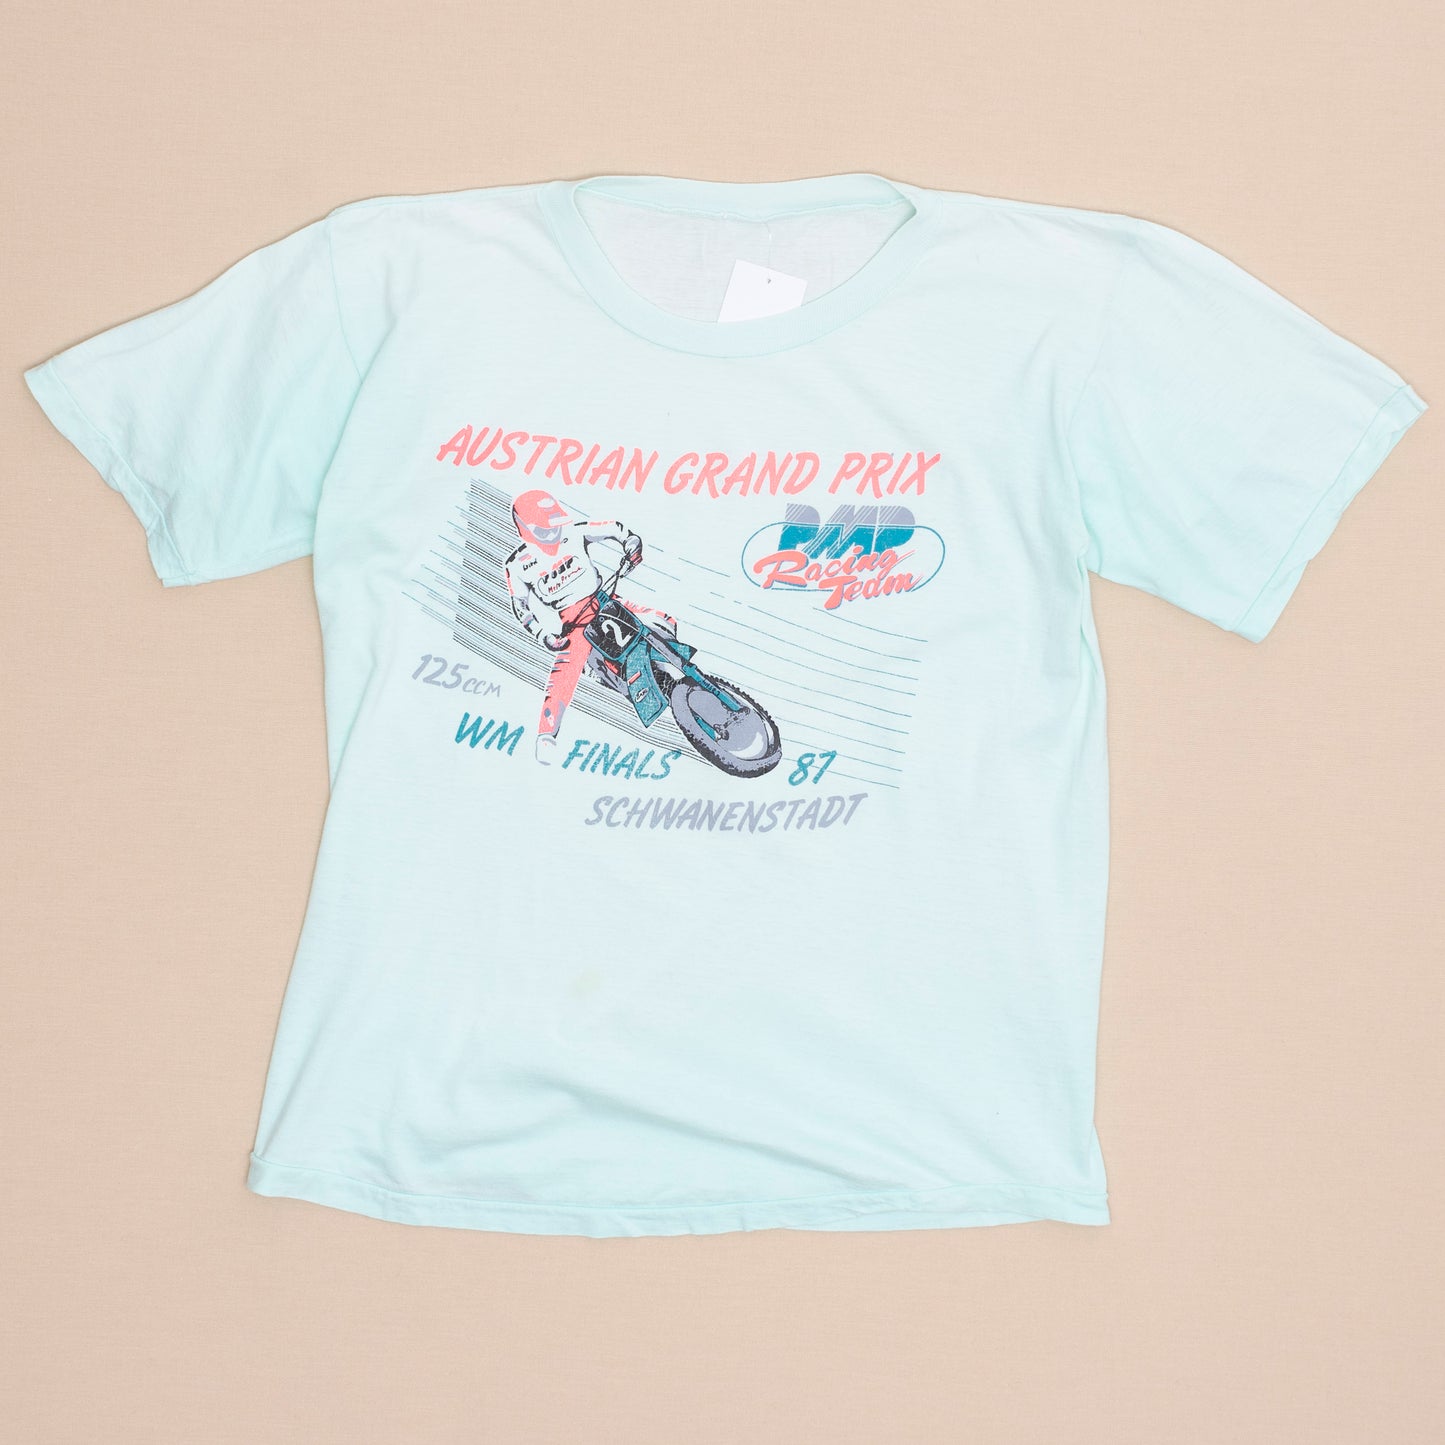 Austrian Motocross Grand Prix '87 T Shirt, XS